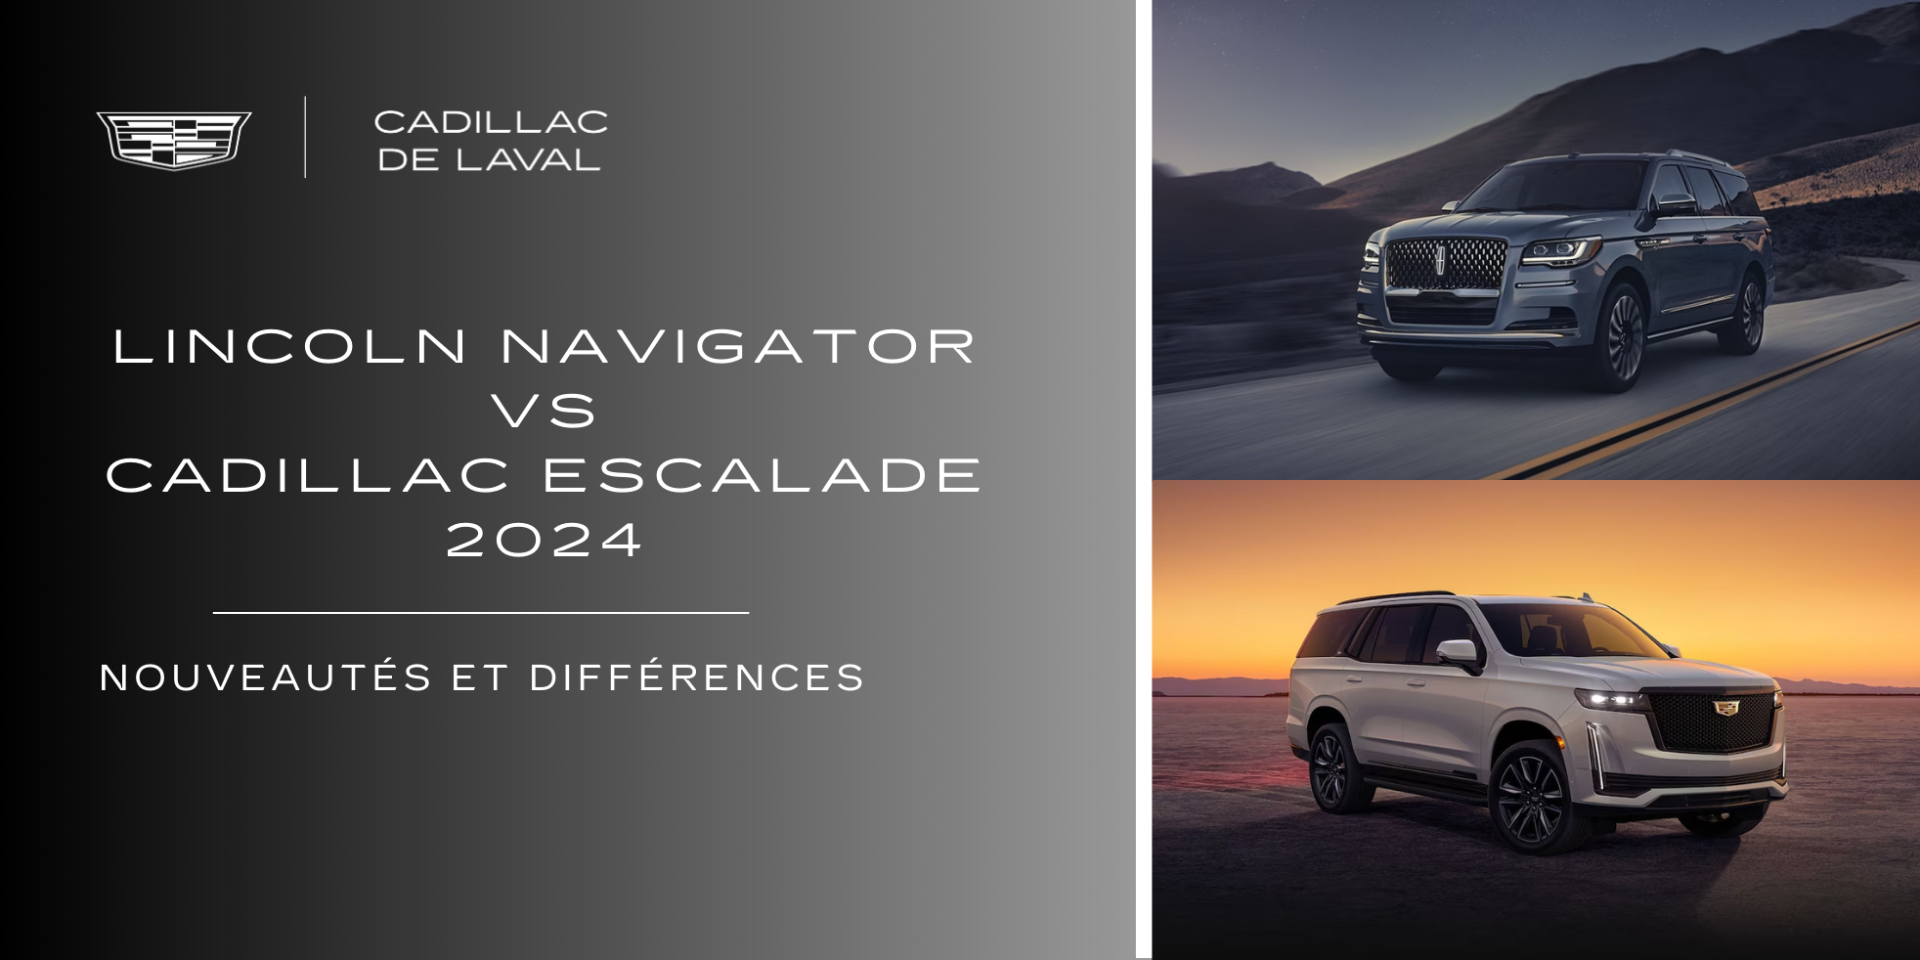 Lincoln Navigator vs Cadillac Escalade 2024 : Nouveautés et différences